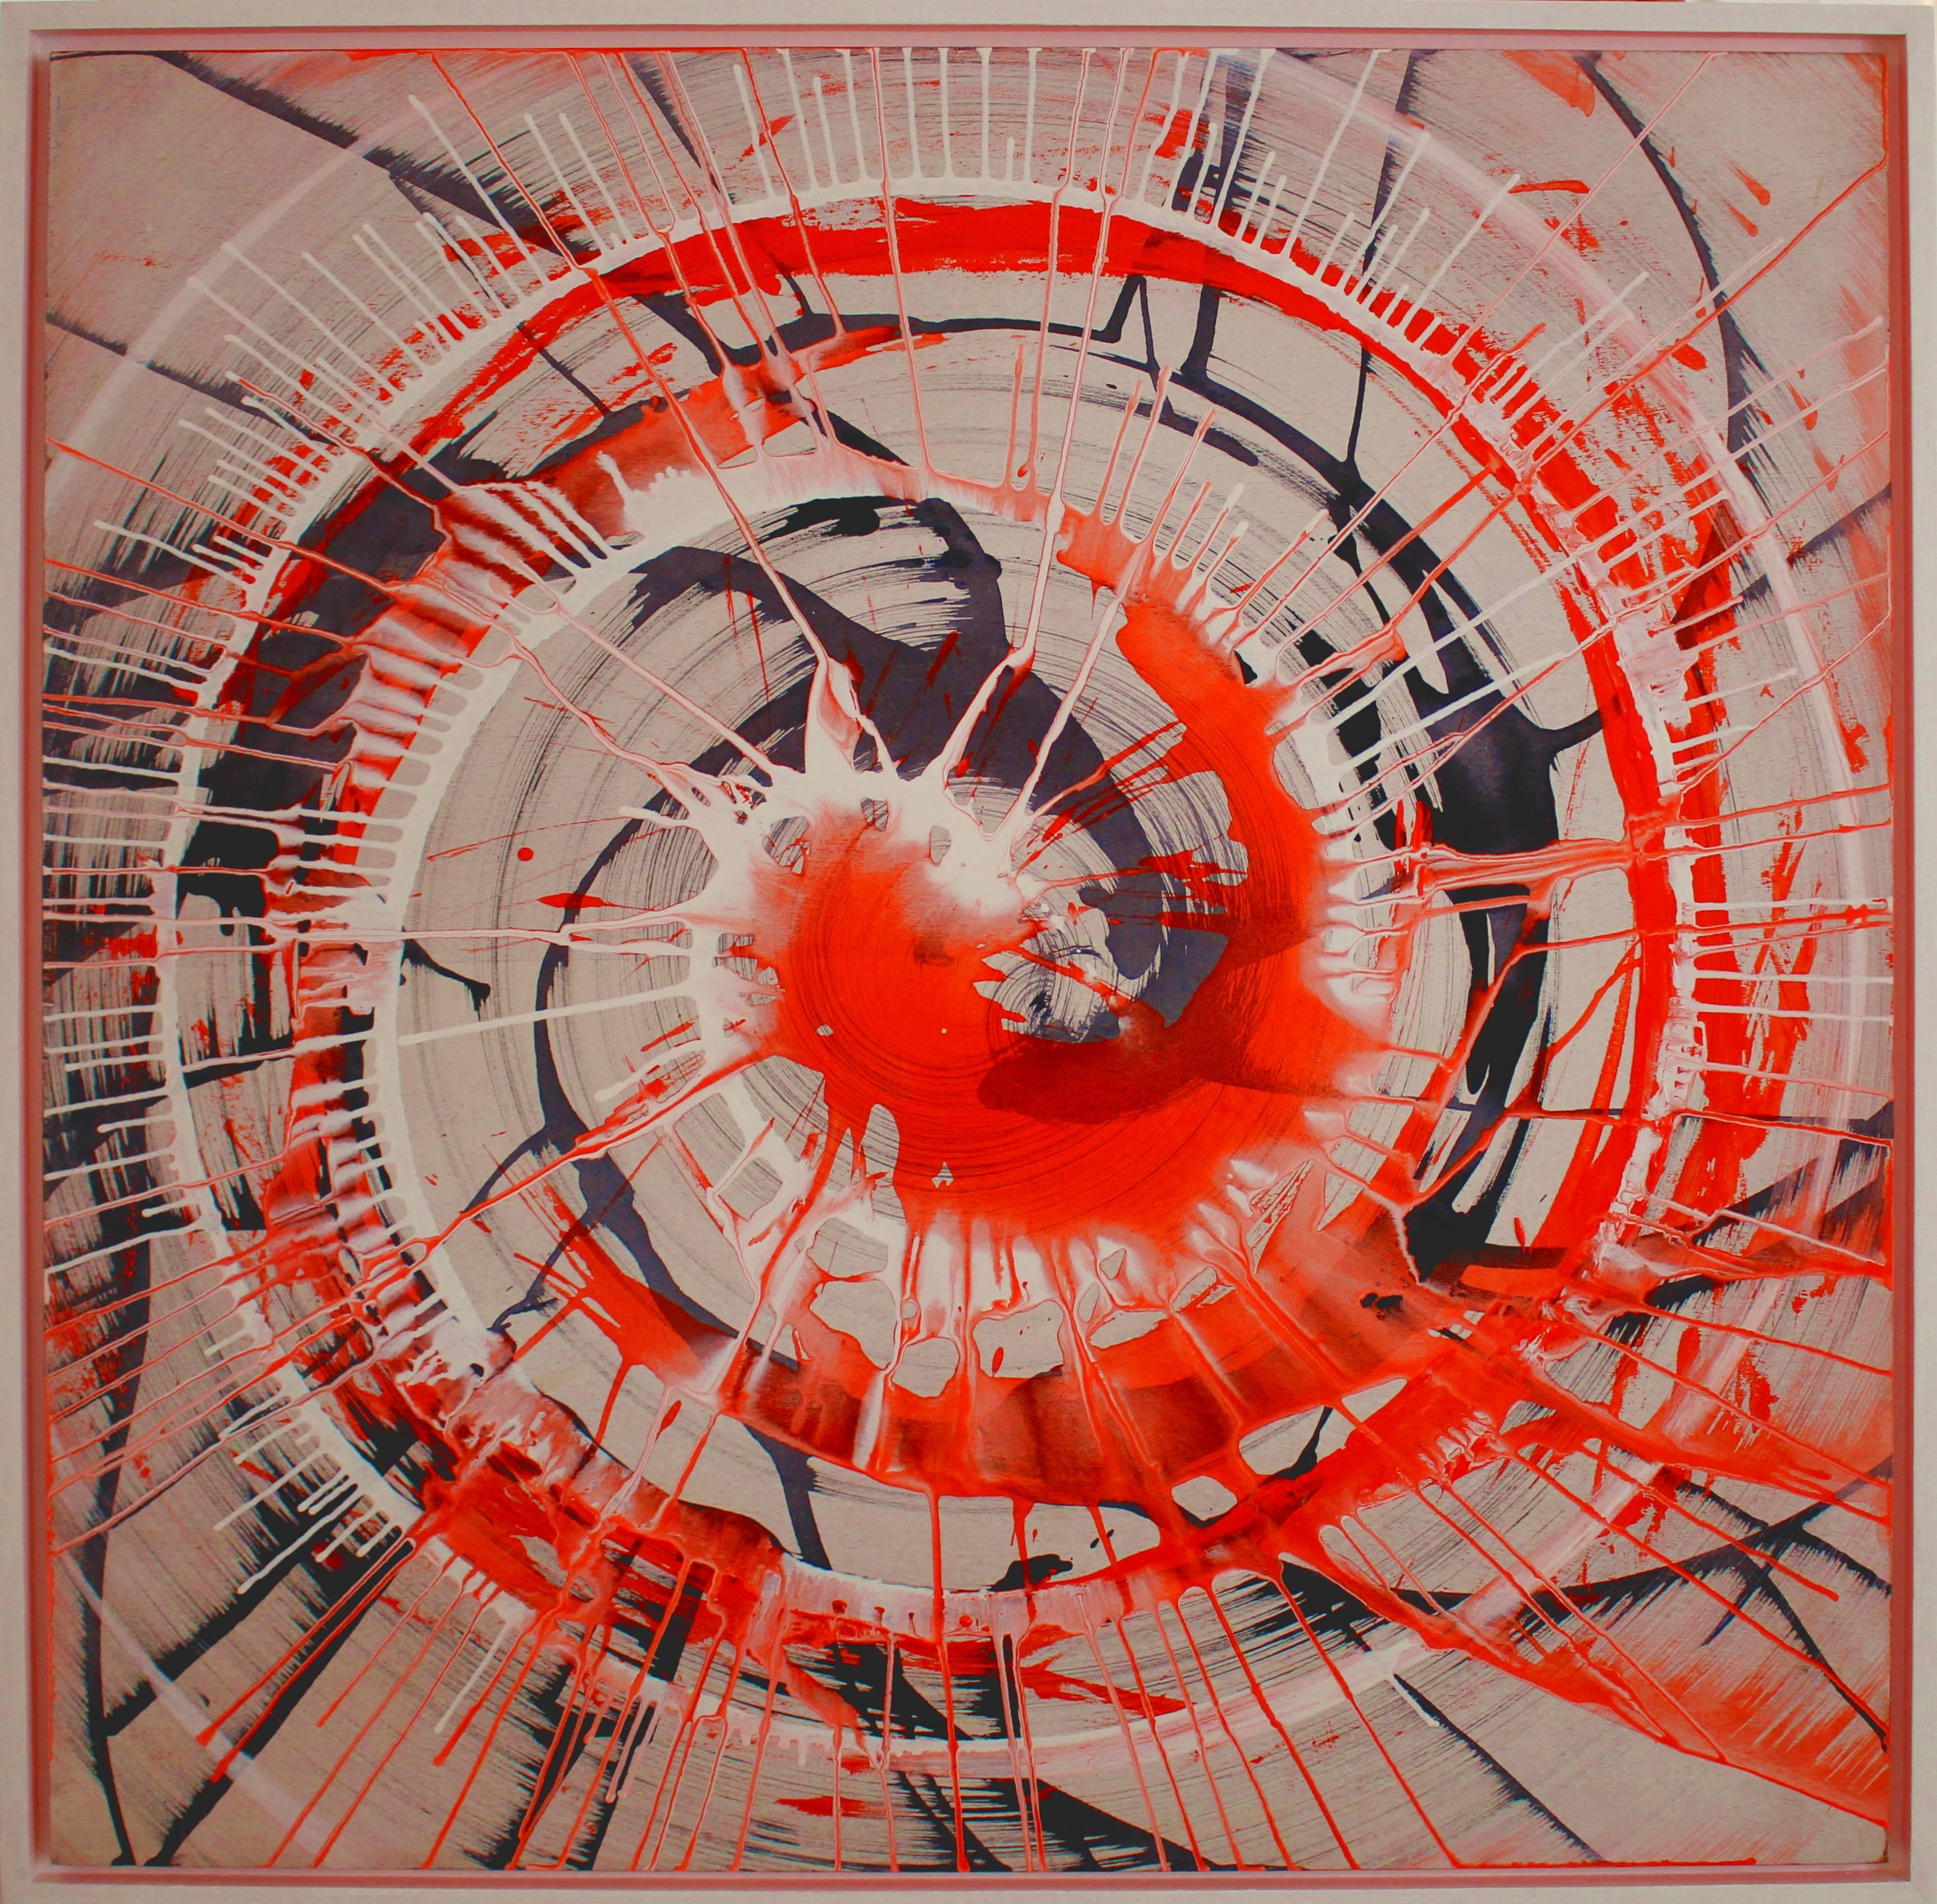 Acryltusche auf Holzplatte, 2017. Signiert, betitelt und datiert auf der Rückseite. Gerahmt. Es kommt direkt aus dem Studio des Künstlers.
Die Abmessungen sind: 34,25 x 34,25 x 1,18 Zoll (87 x 87 x 3 cm) 

Udo Haderlein wurde 1976 in Bamberg,